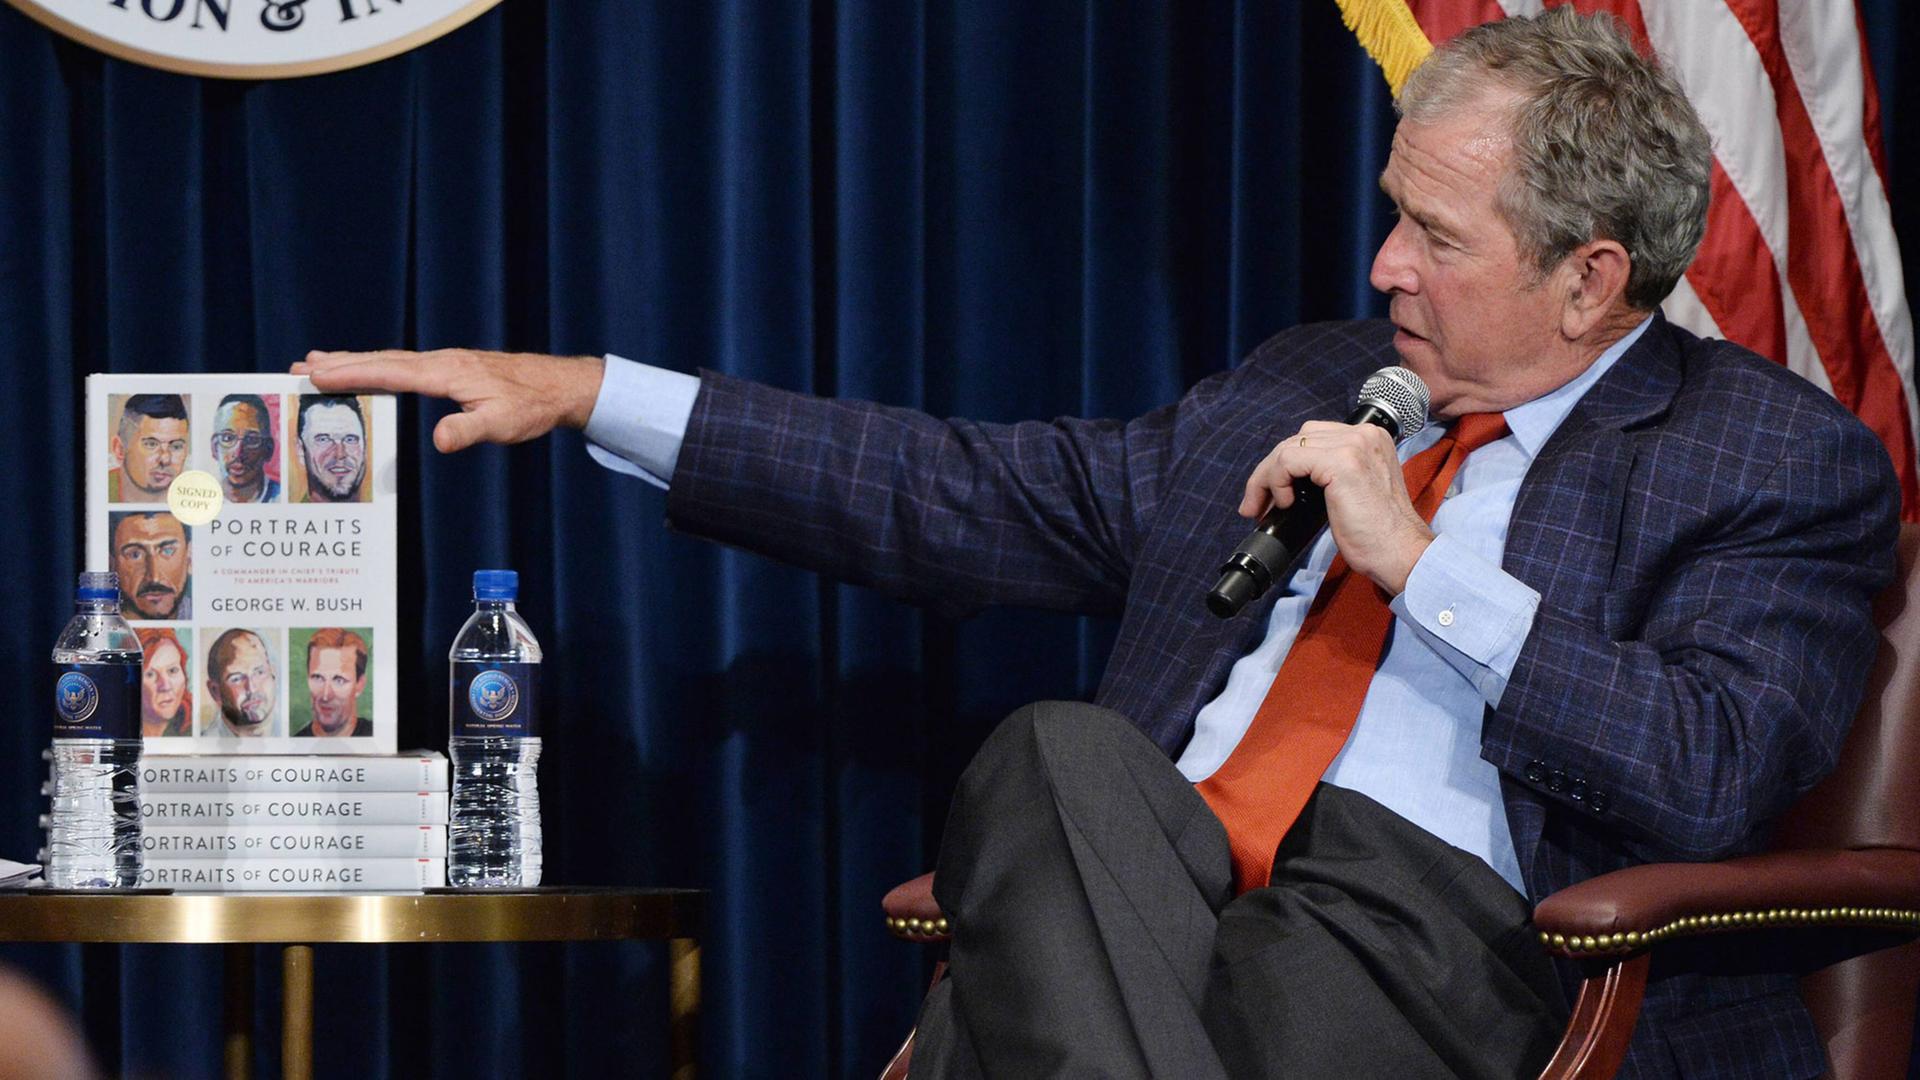  Ex-US-Staatspräsident George W. Bush präsentiert sein Buch "Portraits of Courage".